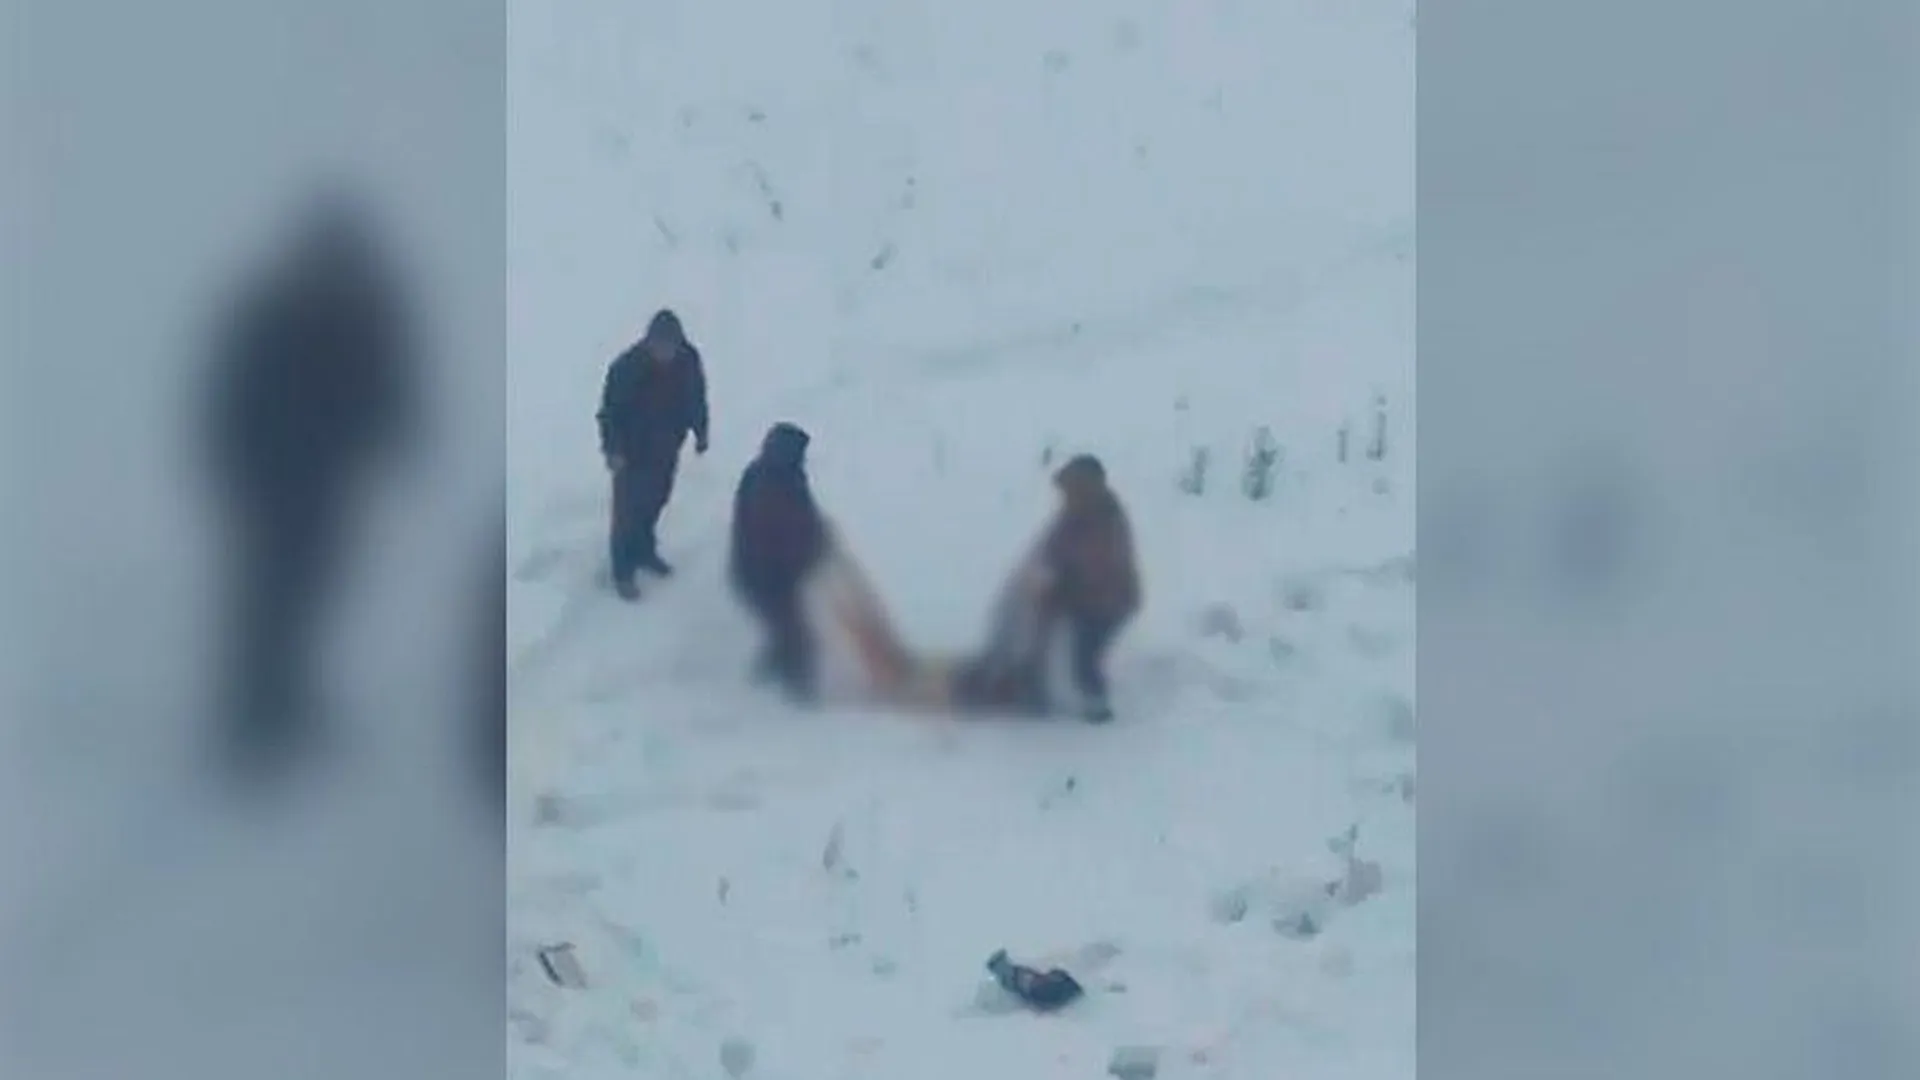 «На лице обнаружены травмы»: в Подмосковье СК проводит проверку по факту смерти мужчины в снегу